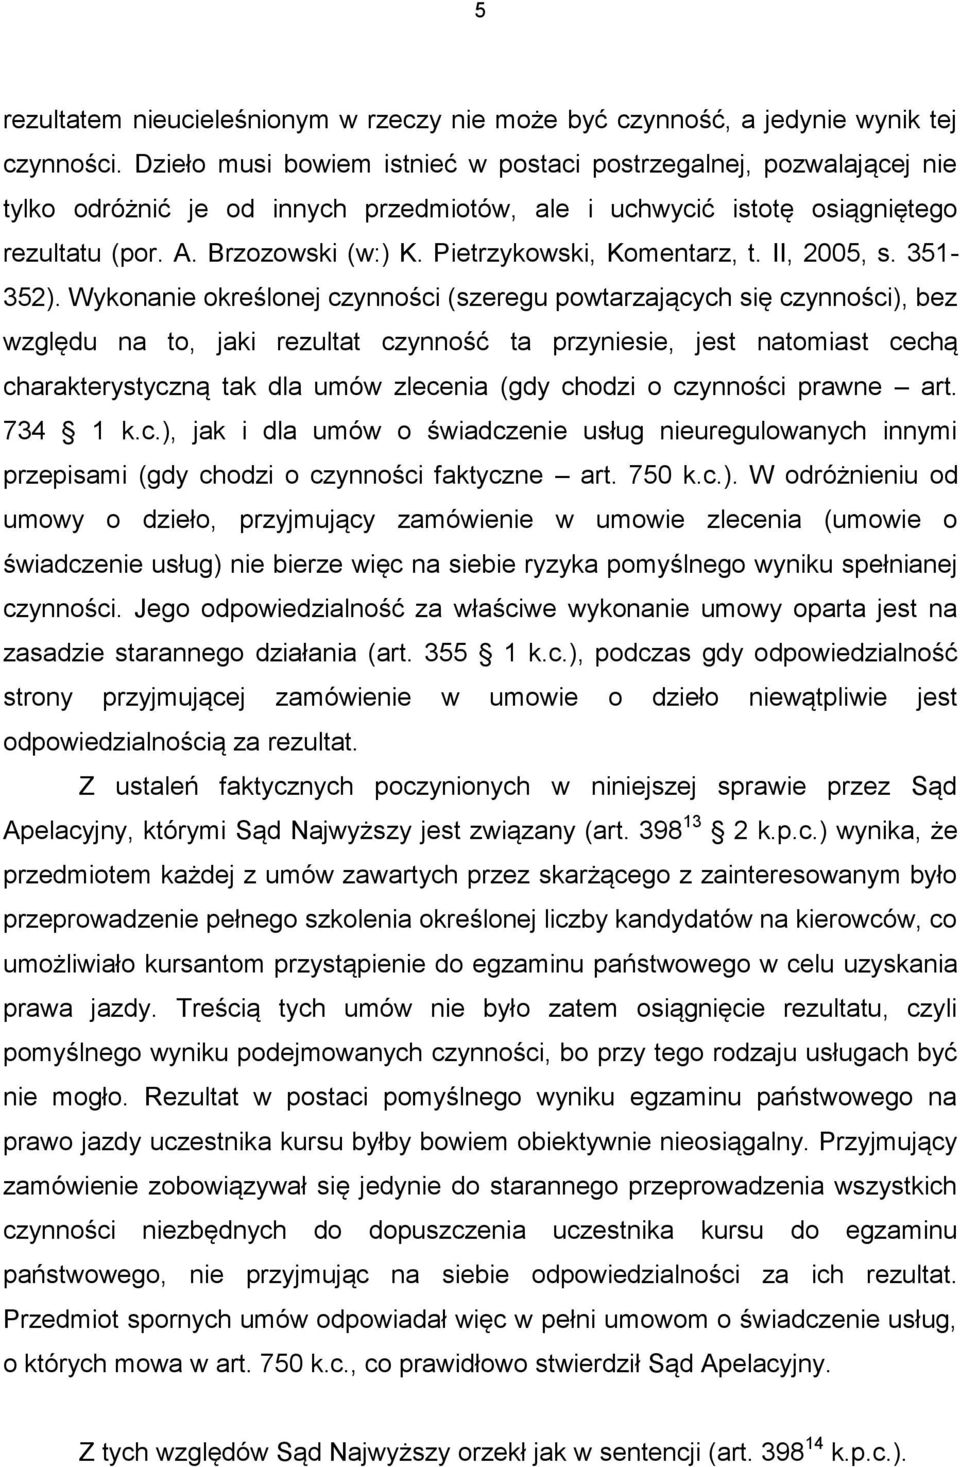 Pietrzykowski, Komentarz, t. II, 2005, s. 351-352).